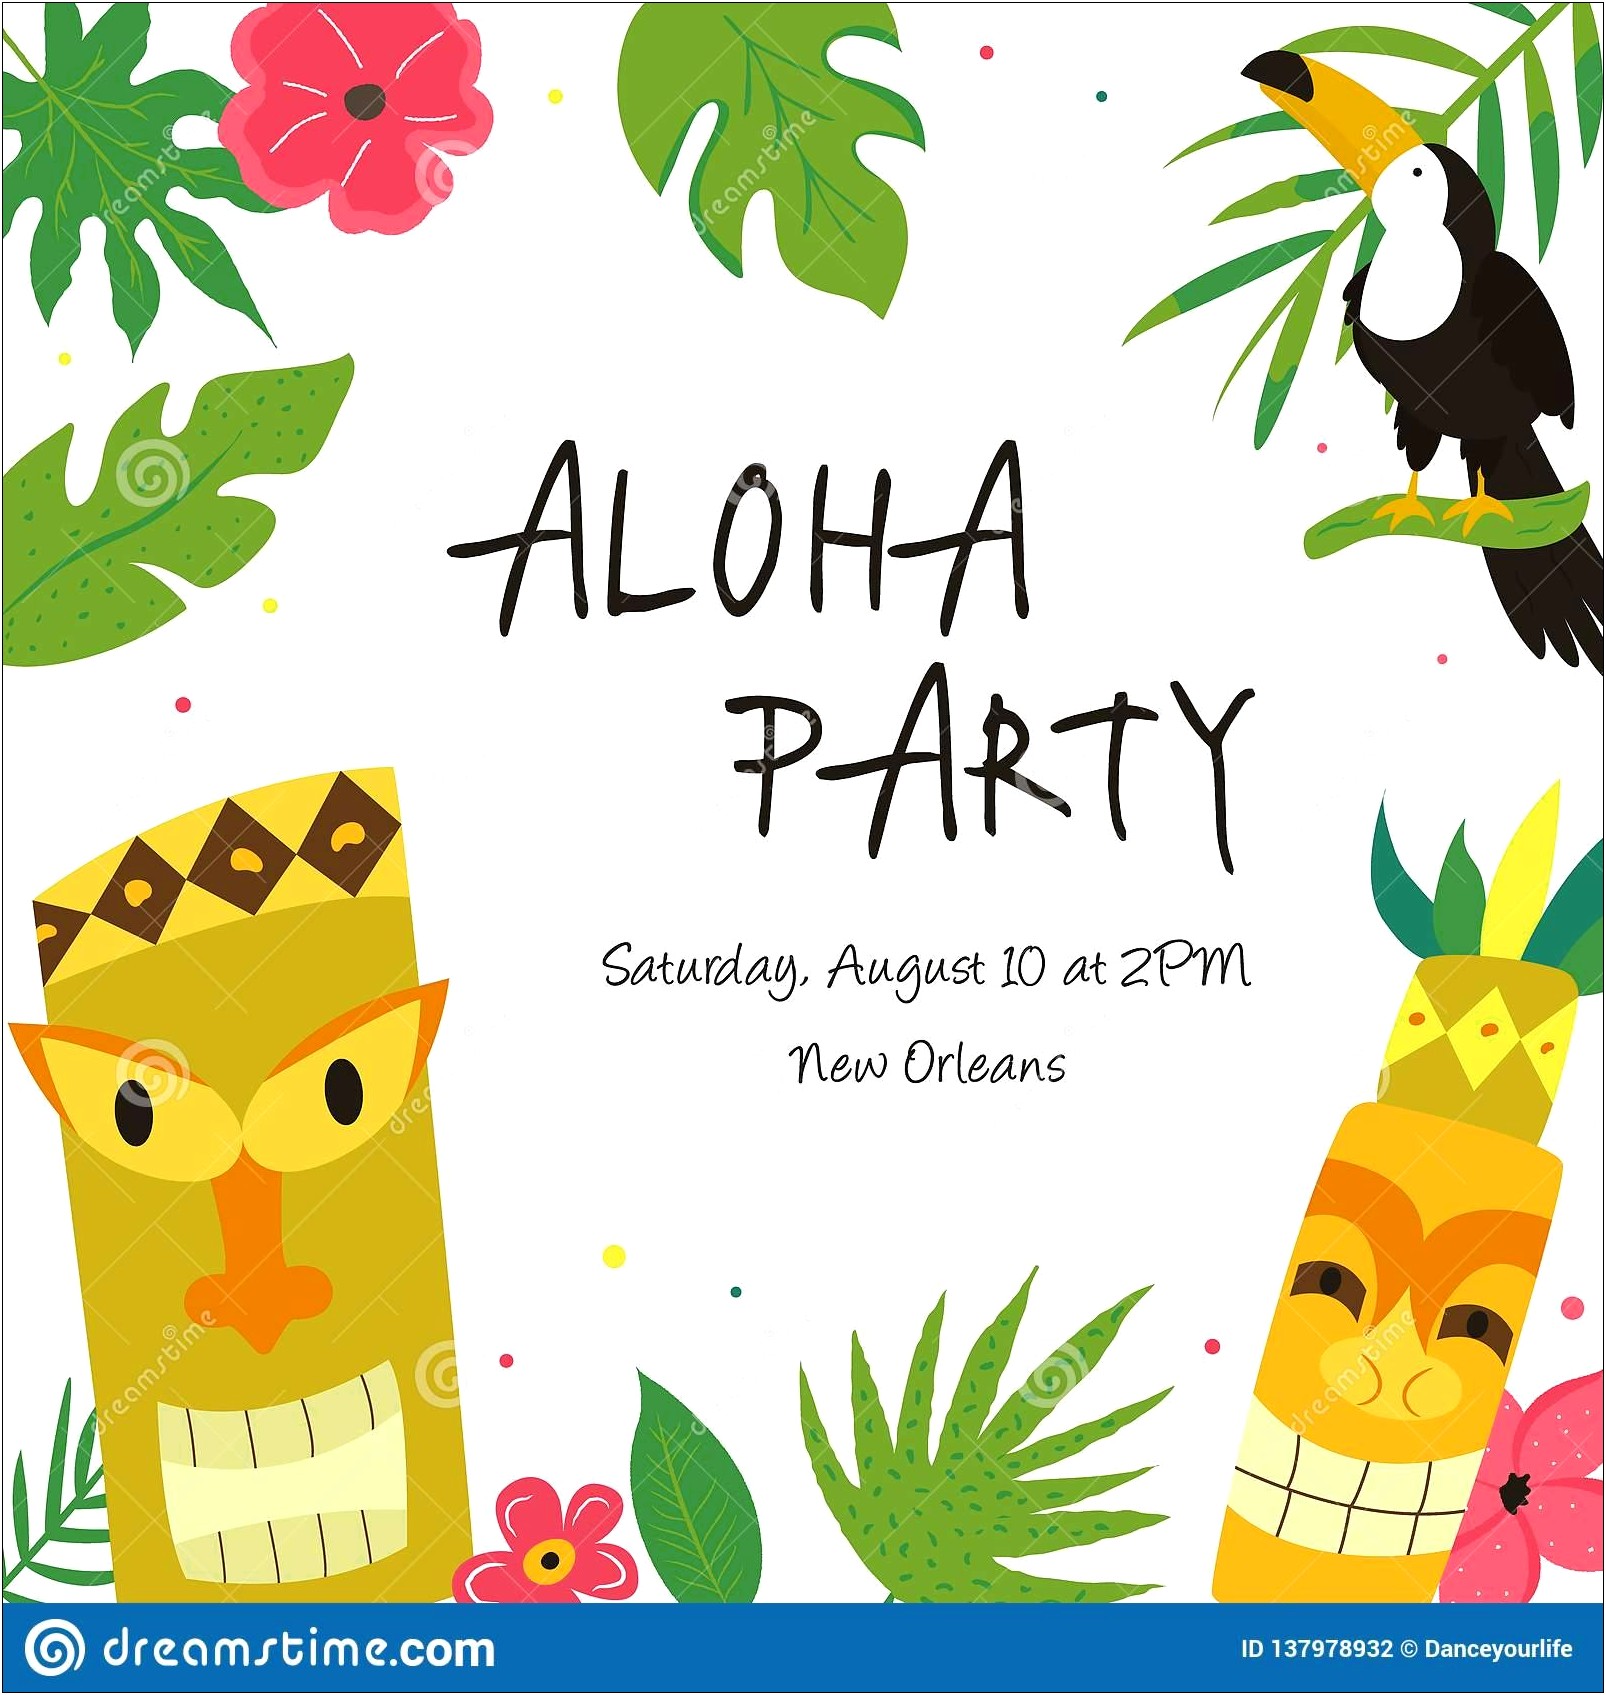 Hawaiian Birthday Party Invitations Templates Free